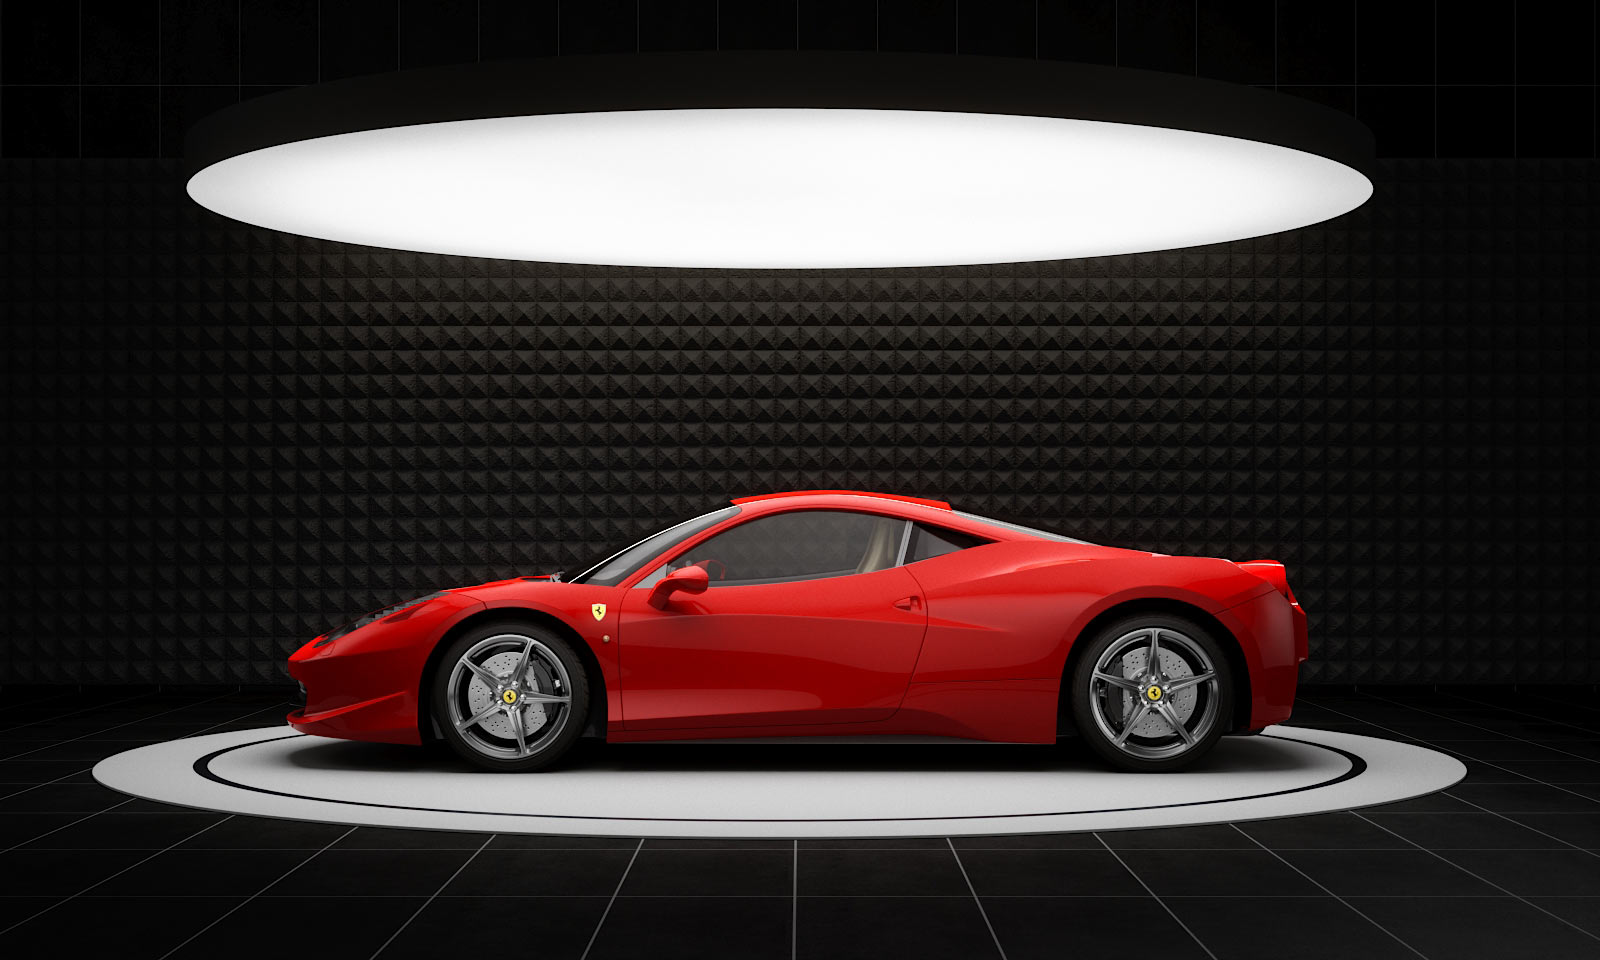 Ferrari 458 Under Big Ceiling Light Box Private Luxury Supercar Showroom